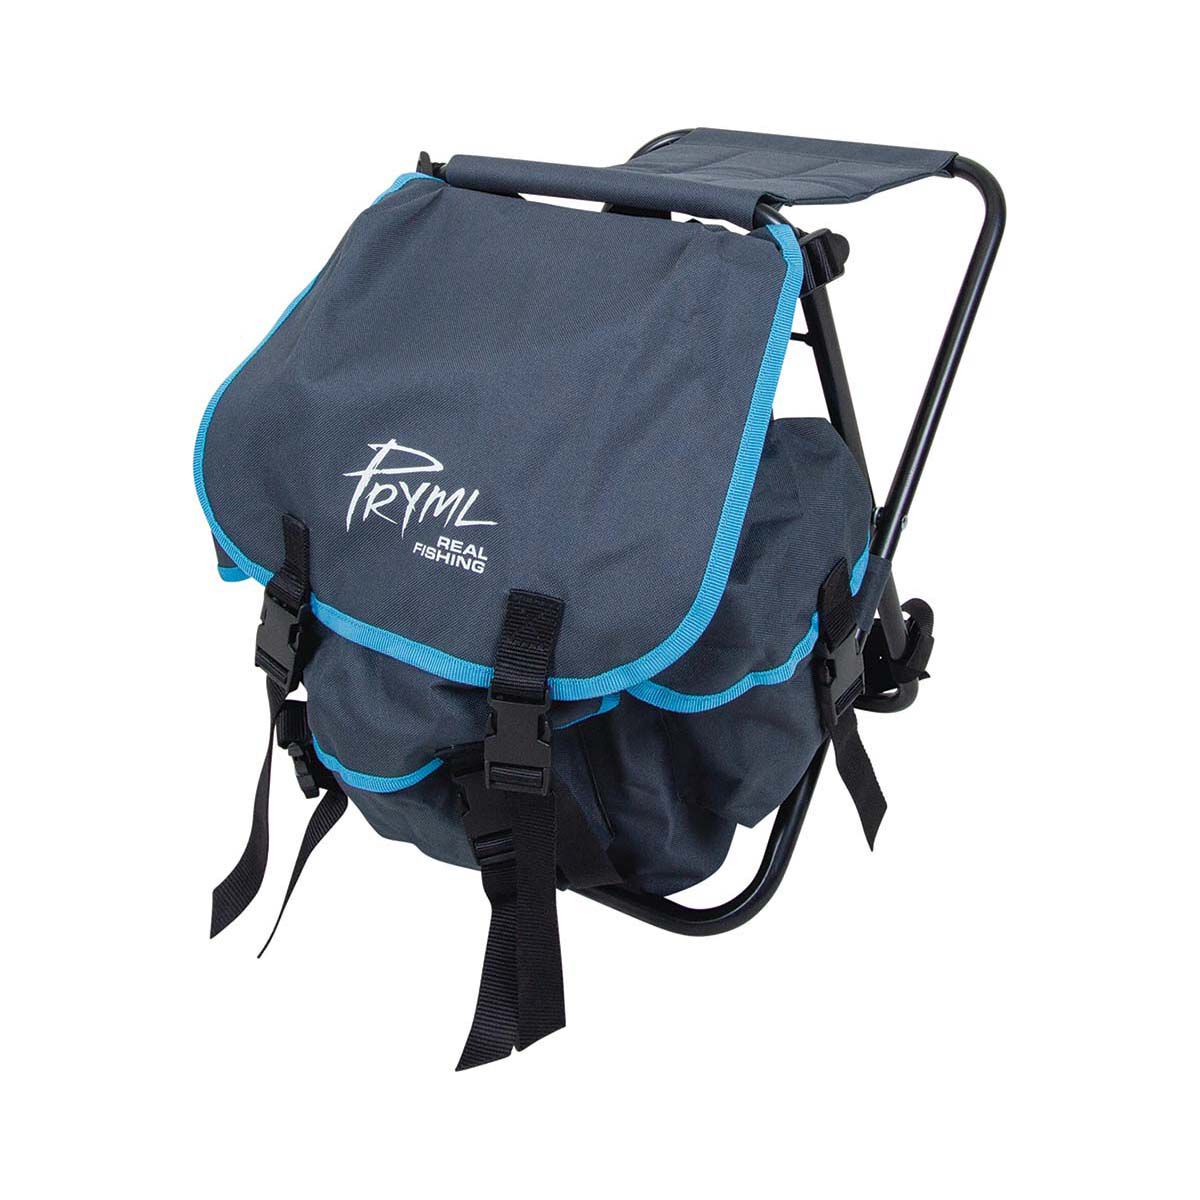 Fishing Drop Leg Bag for Men Women Tackle Bag Backpack Outdoor Fly Fishing  Bag Hiking Waist Bag for Traveling Cycling Fishing